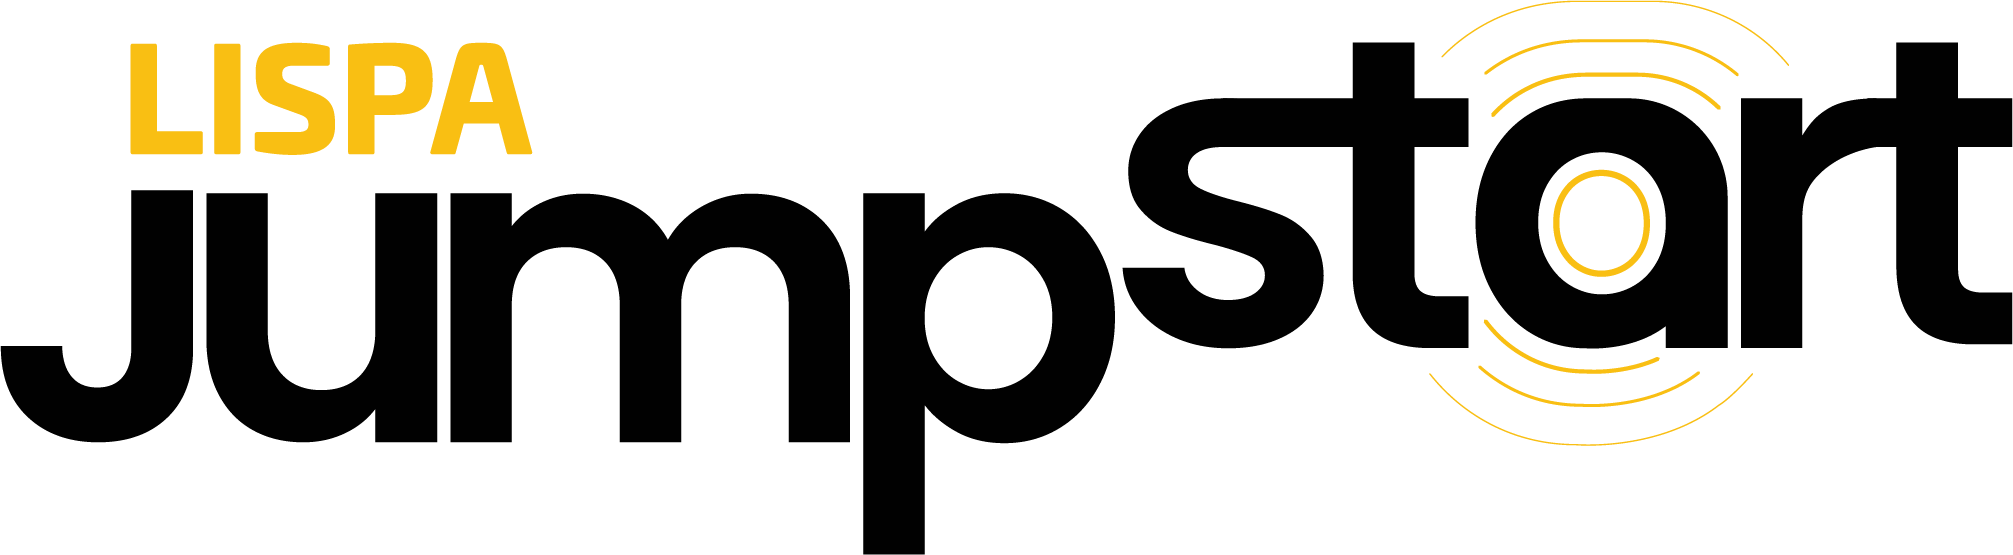 LISPA Jumpstart logotipo